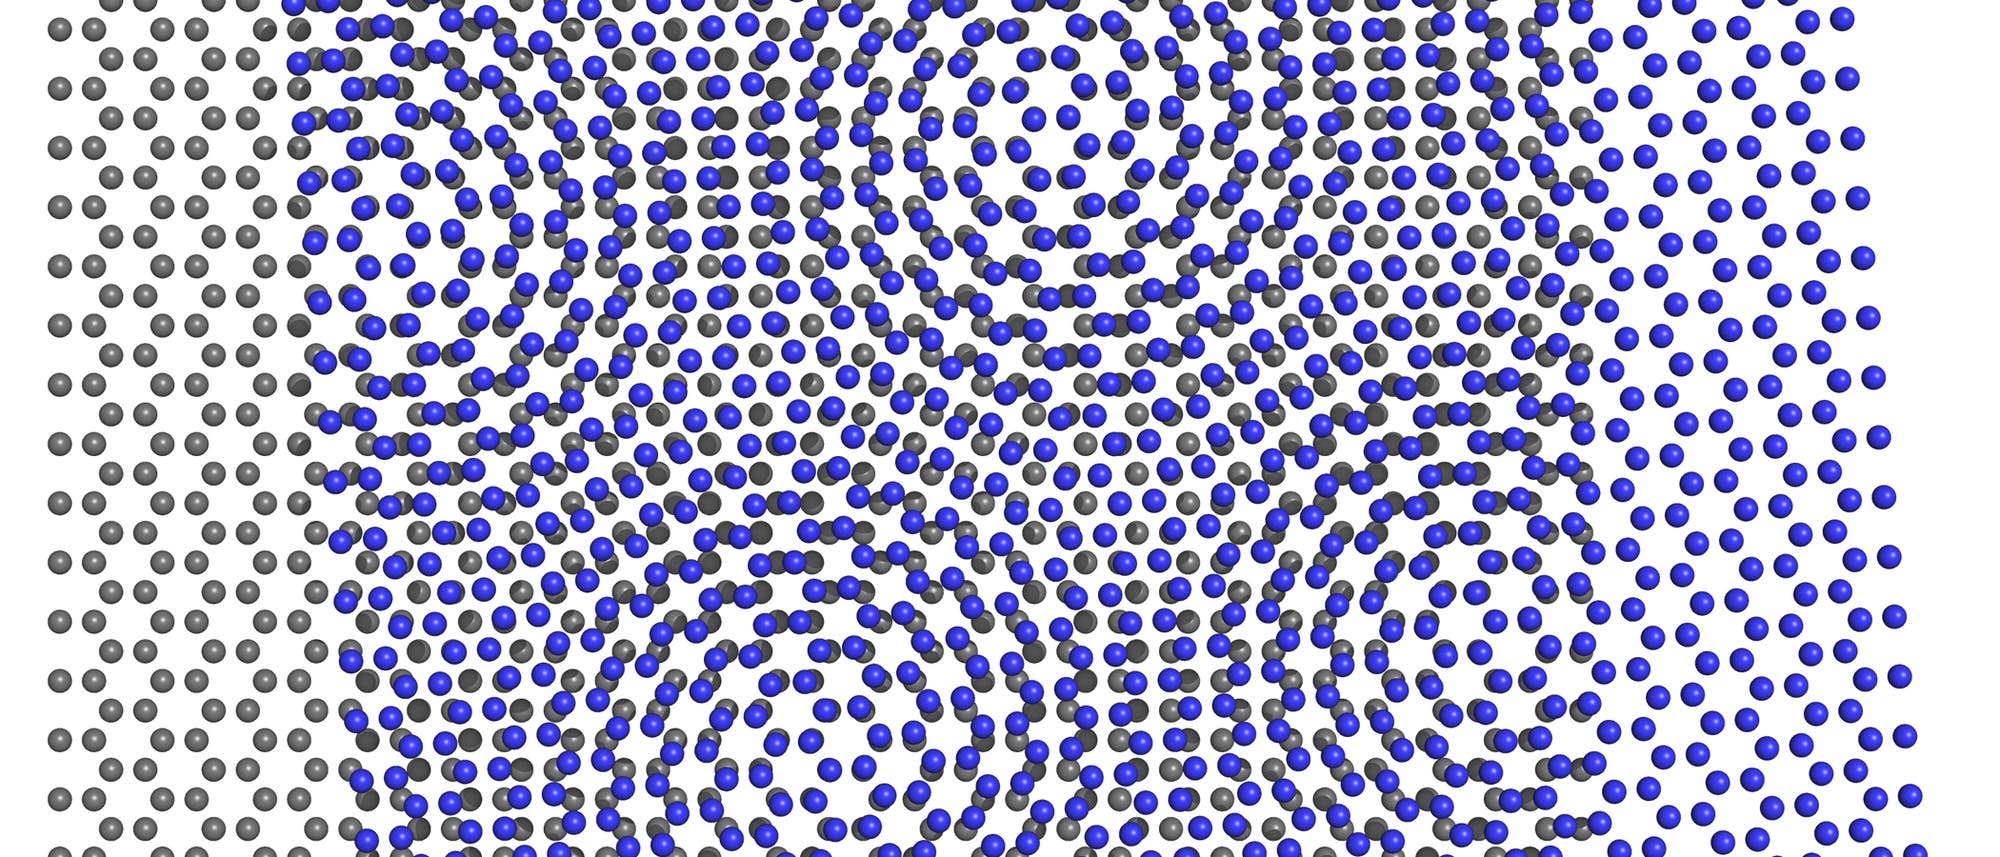 Zwei übereinanderliegende hexagonale Gitter erzeugen einen Moiré-Effekt